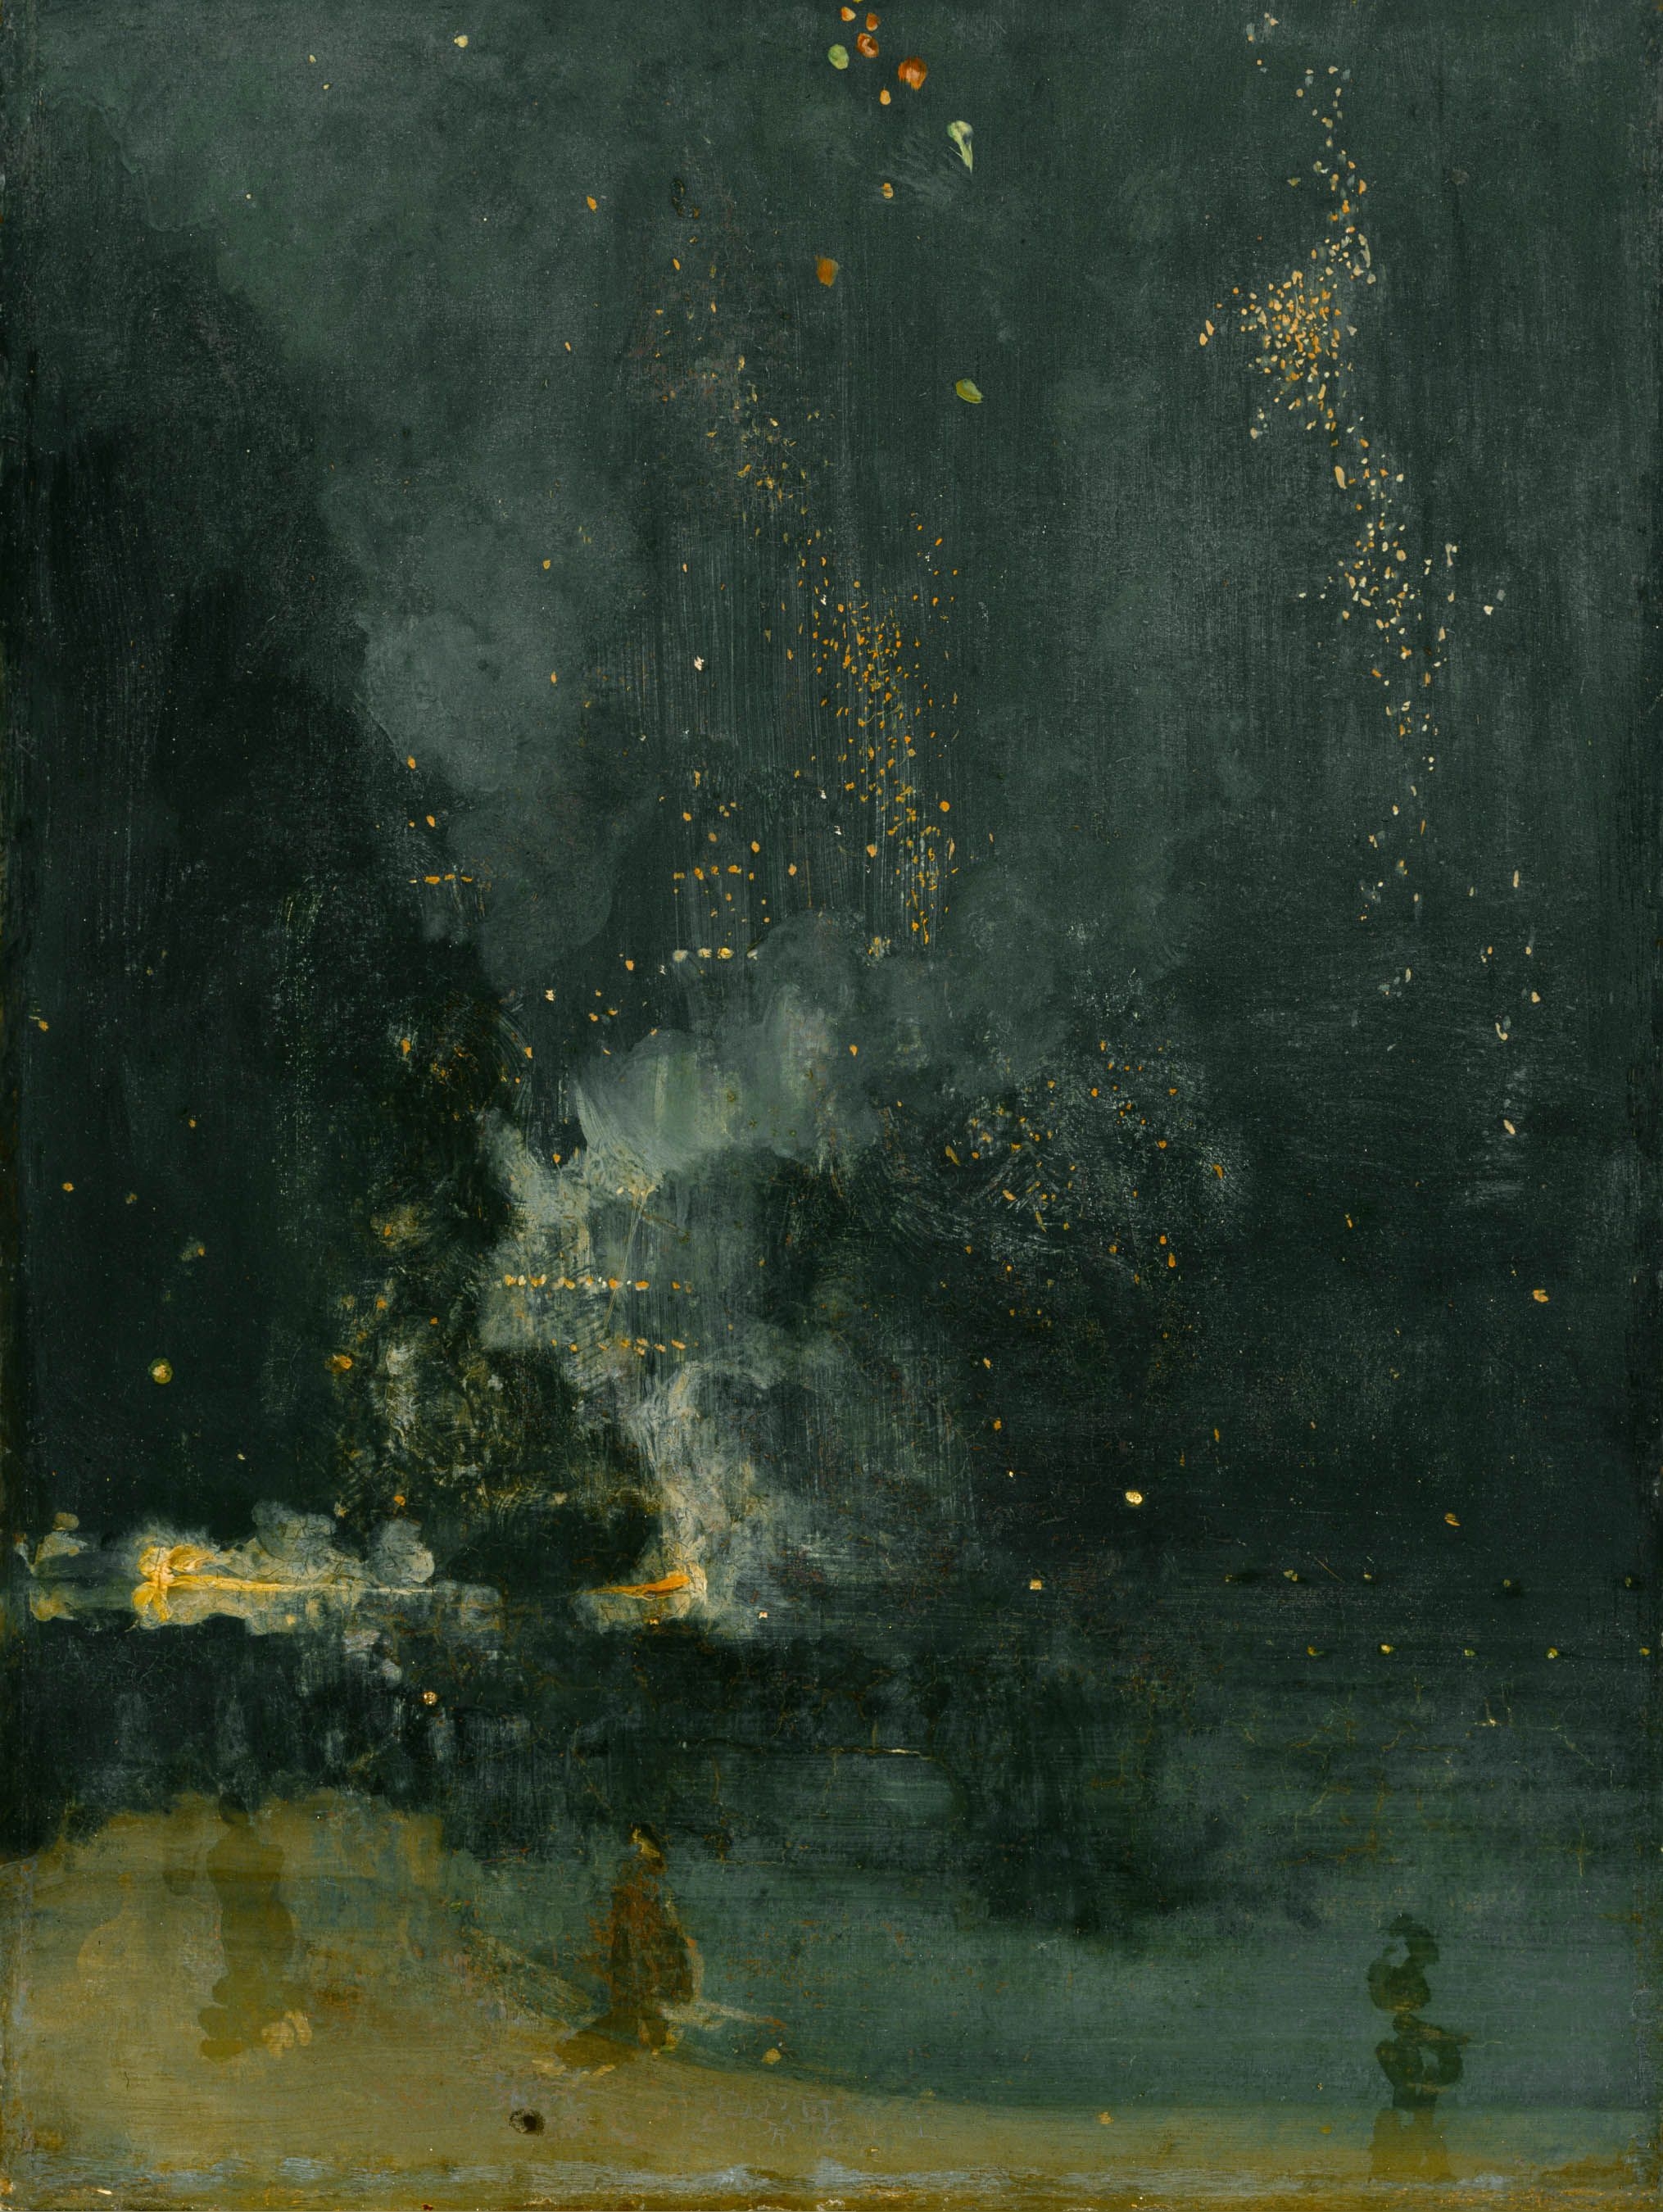 مقطوعة حالمة بالأسود والذهبي، قذيفة ساقطة by James Abbott McNeill Whistler - 1875 م - 60.3 × 46.7 سم 